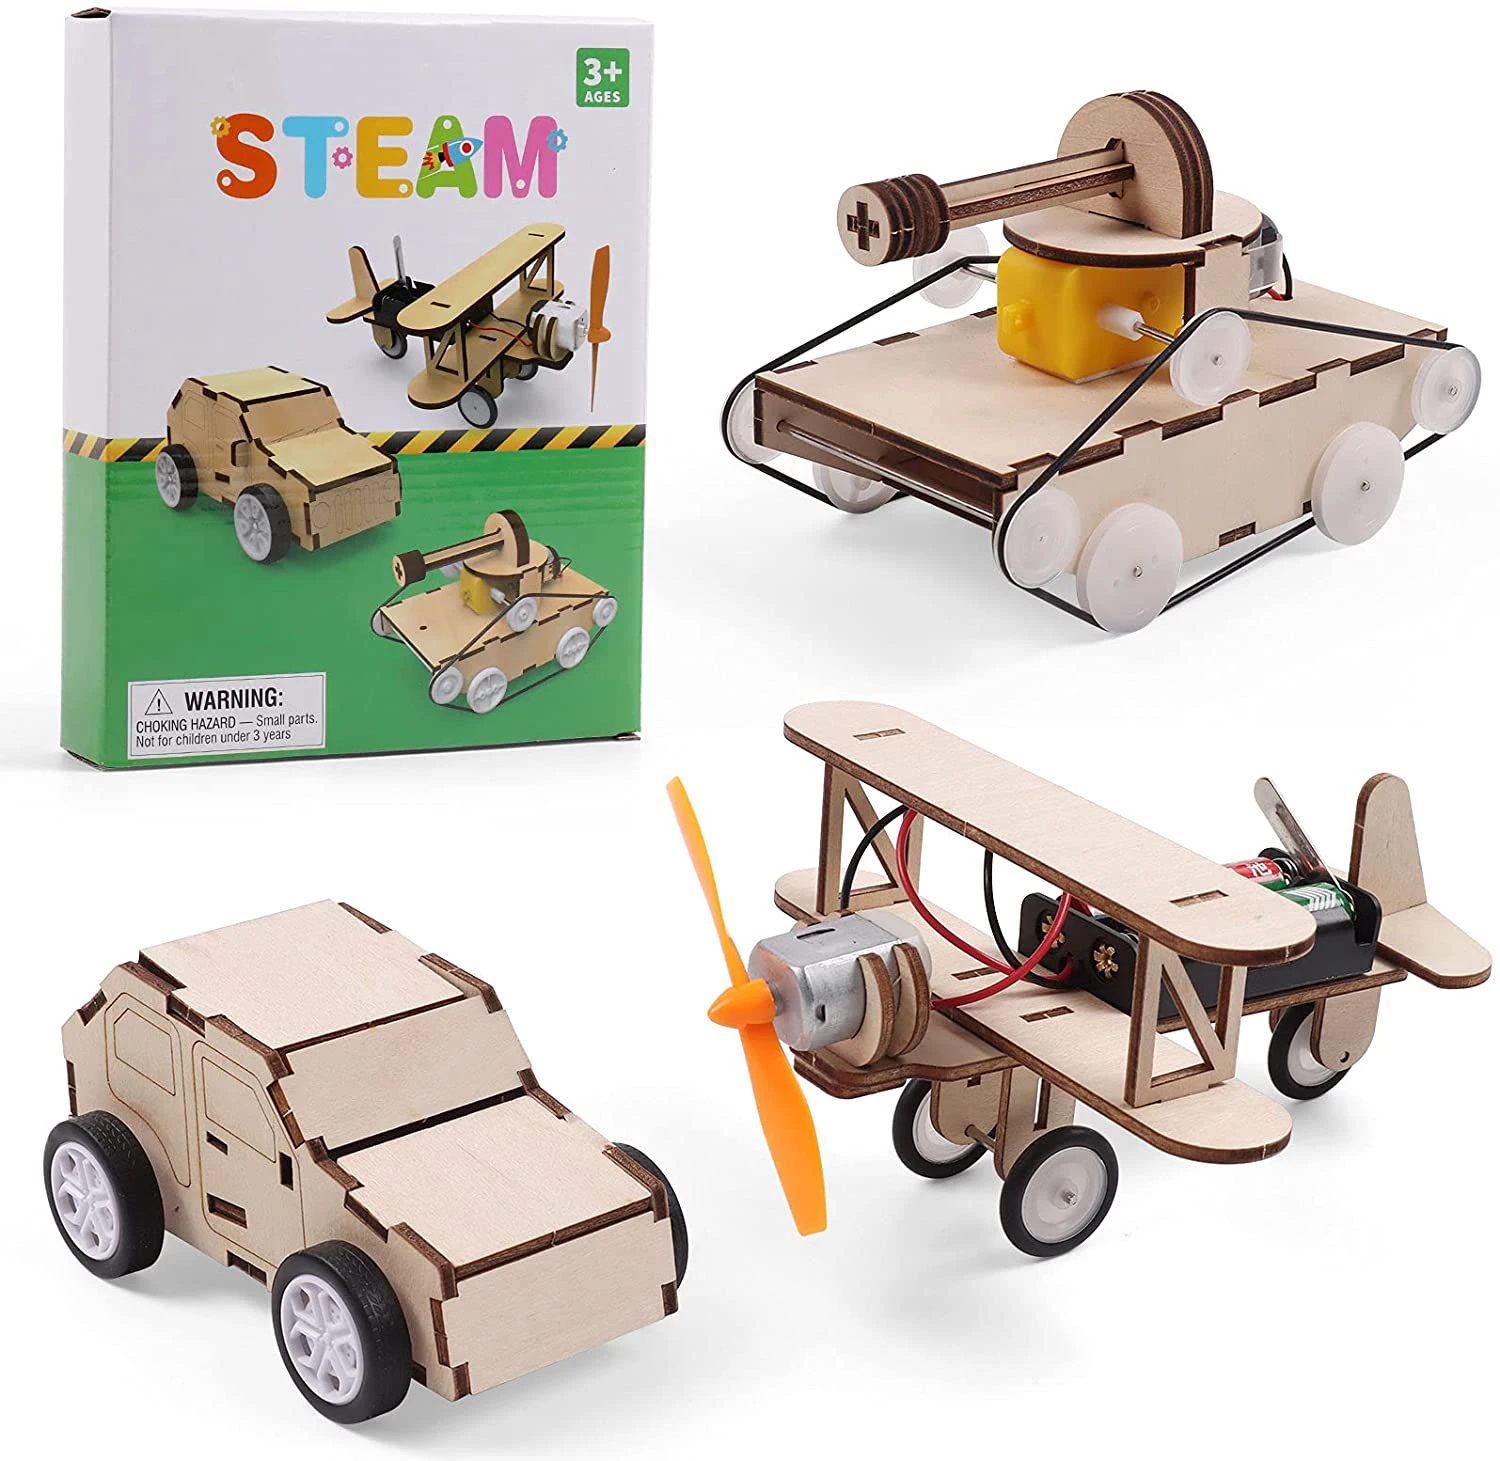 Bulldozer 3D Puzzle Woodcraft Bausatz Spielzeug Kinderspielzeug Bestes Geschenk